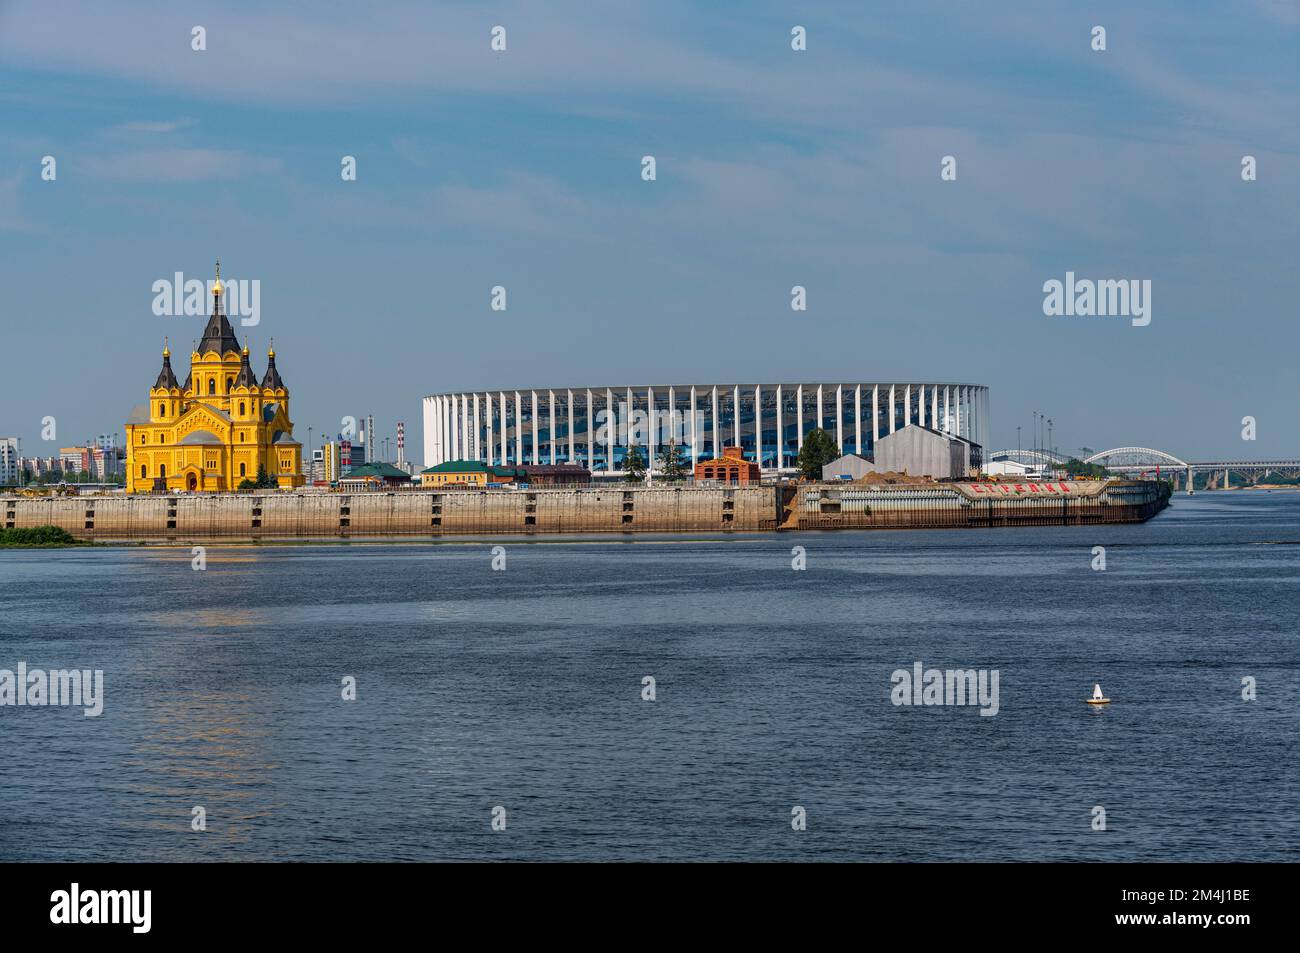 Alexander Nevsky Cathedral on the Volga, Nizhny Novgorod, Russia Stock Photo